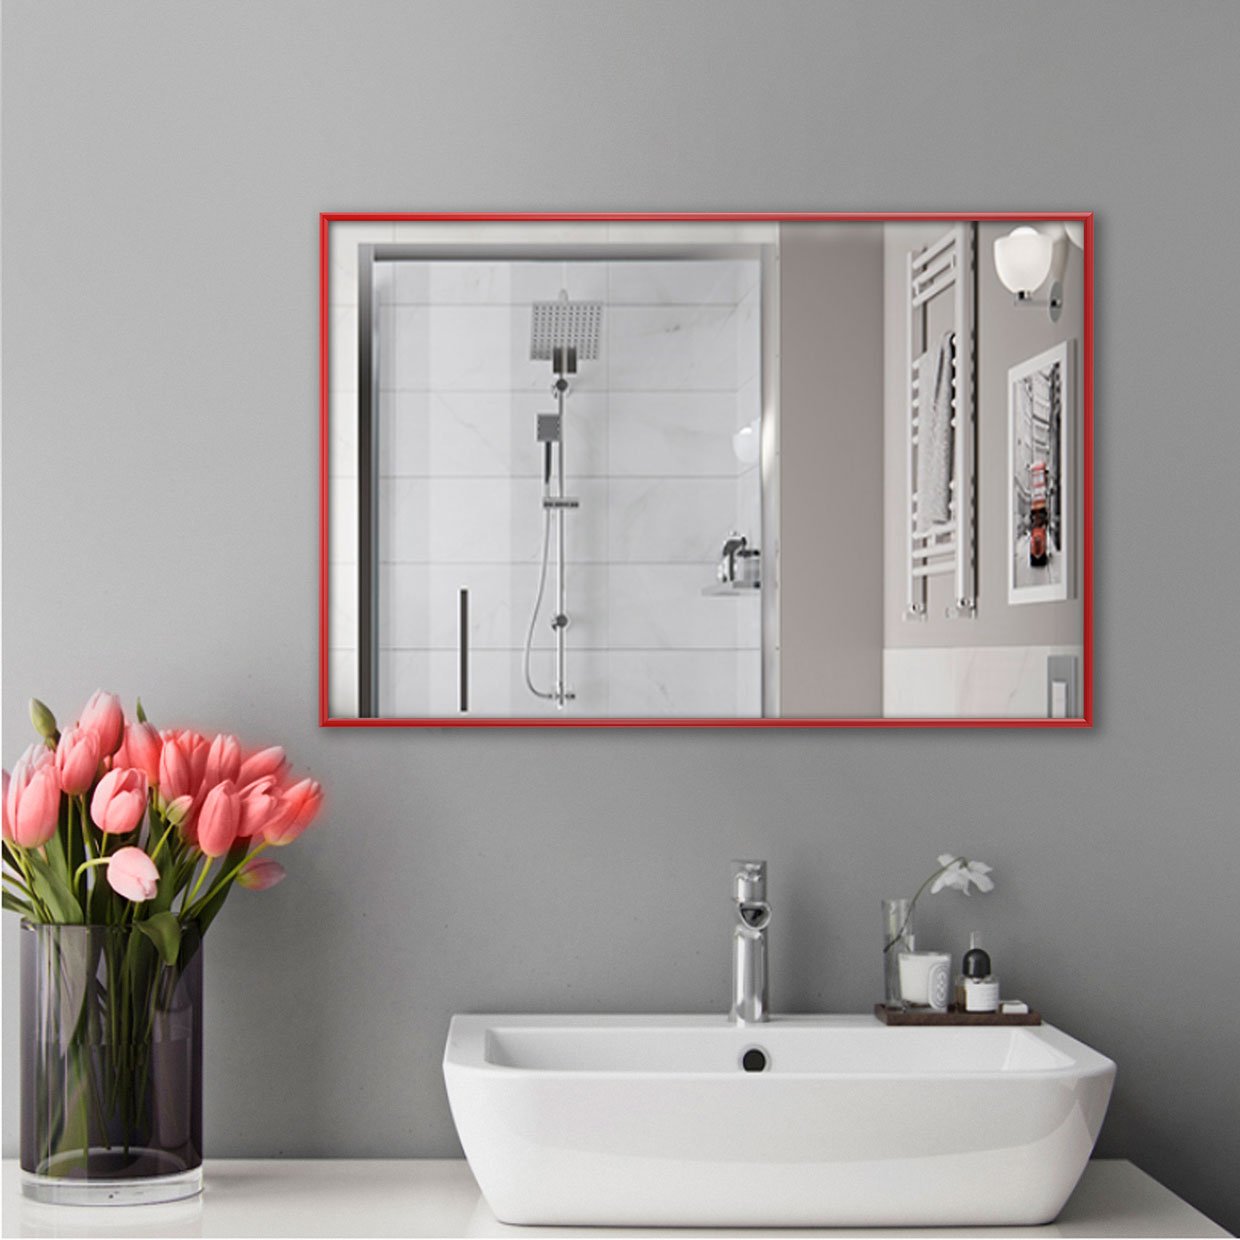 Настінне дзеркало для ванної кімнати в червоному кольорі.